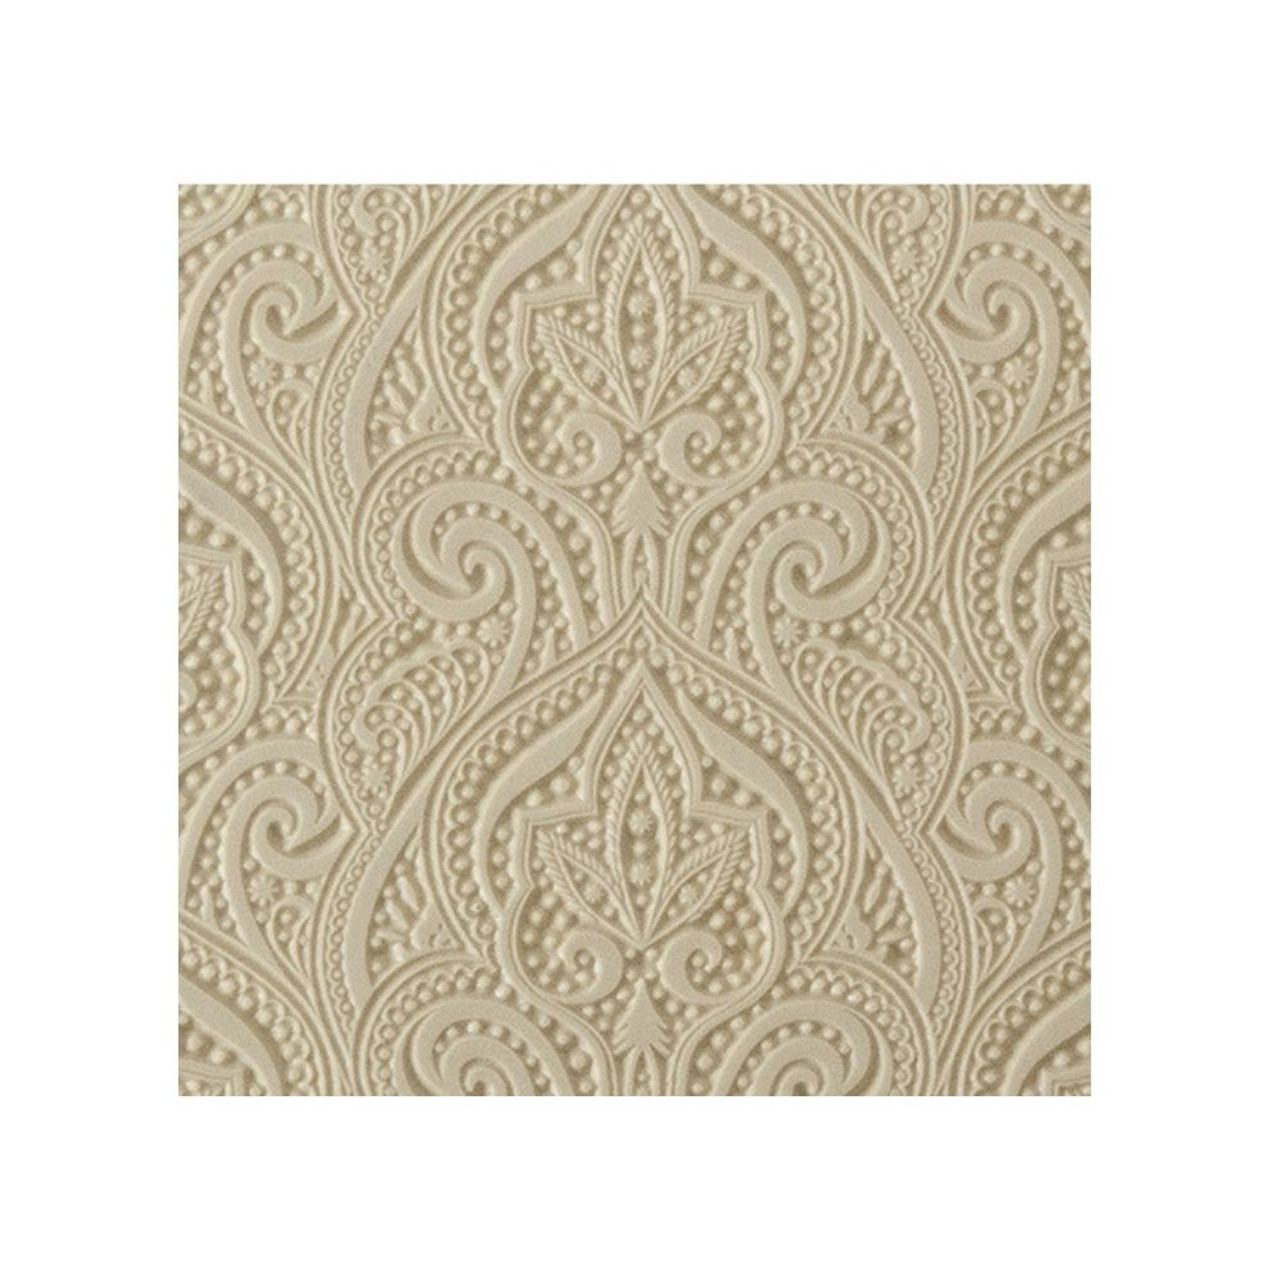 Texture Tile - Henna Symmetry 103-TTL-872